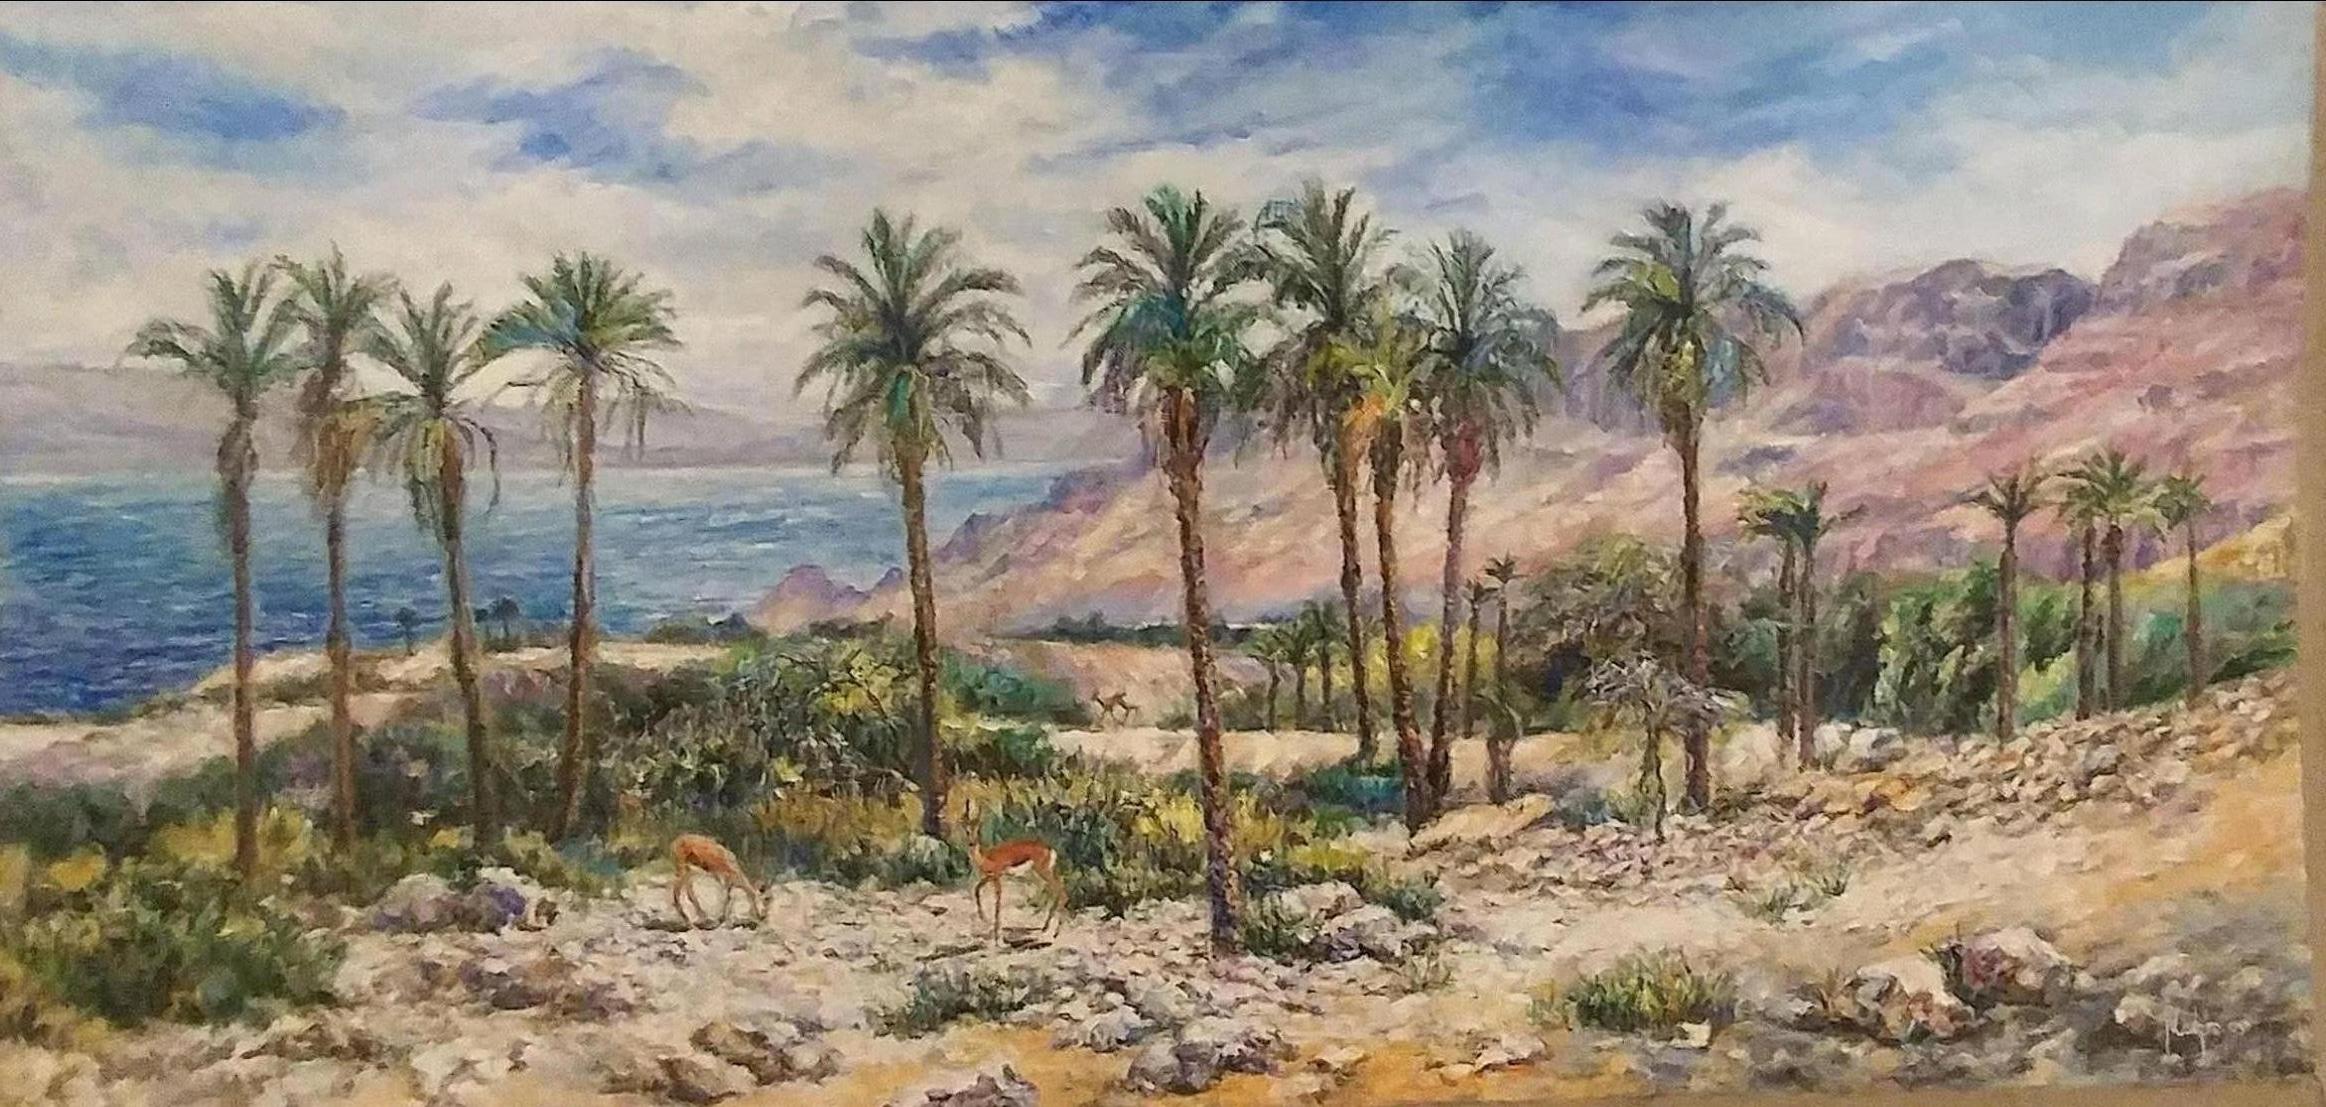 Tamar Finkelstein Landscape Painting - Ein Gedi (Landscape)